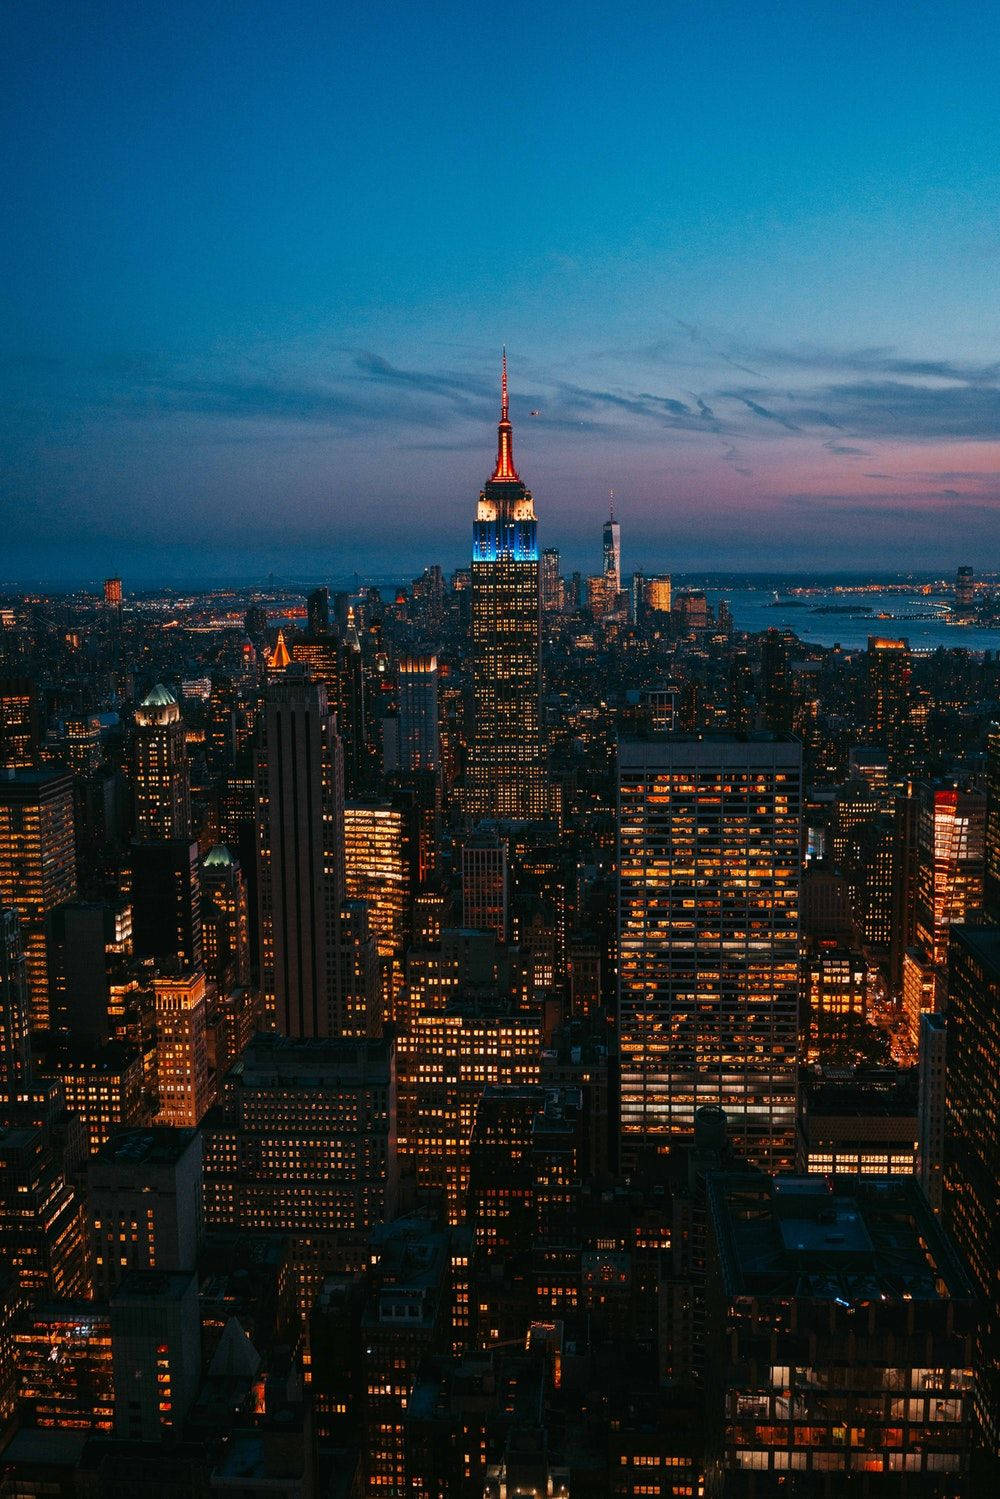 Impresionantevista Nocturna Del Empire State Building En Tu Teléfono De Nyc. Fondo de pantalla